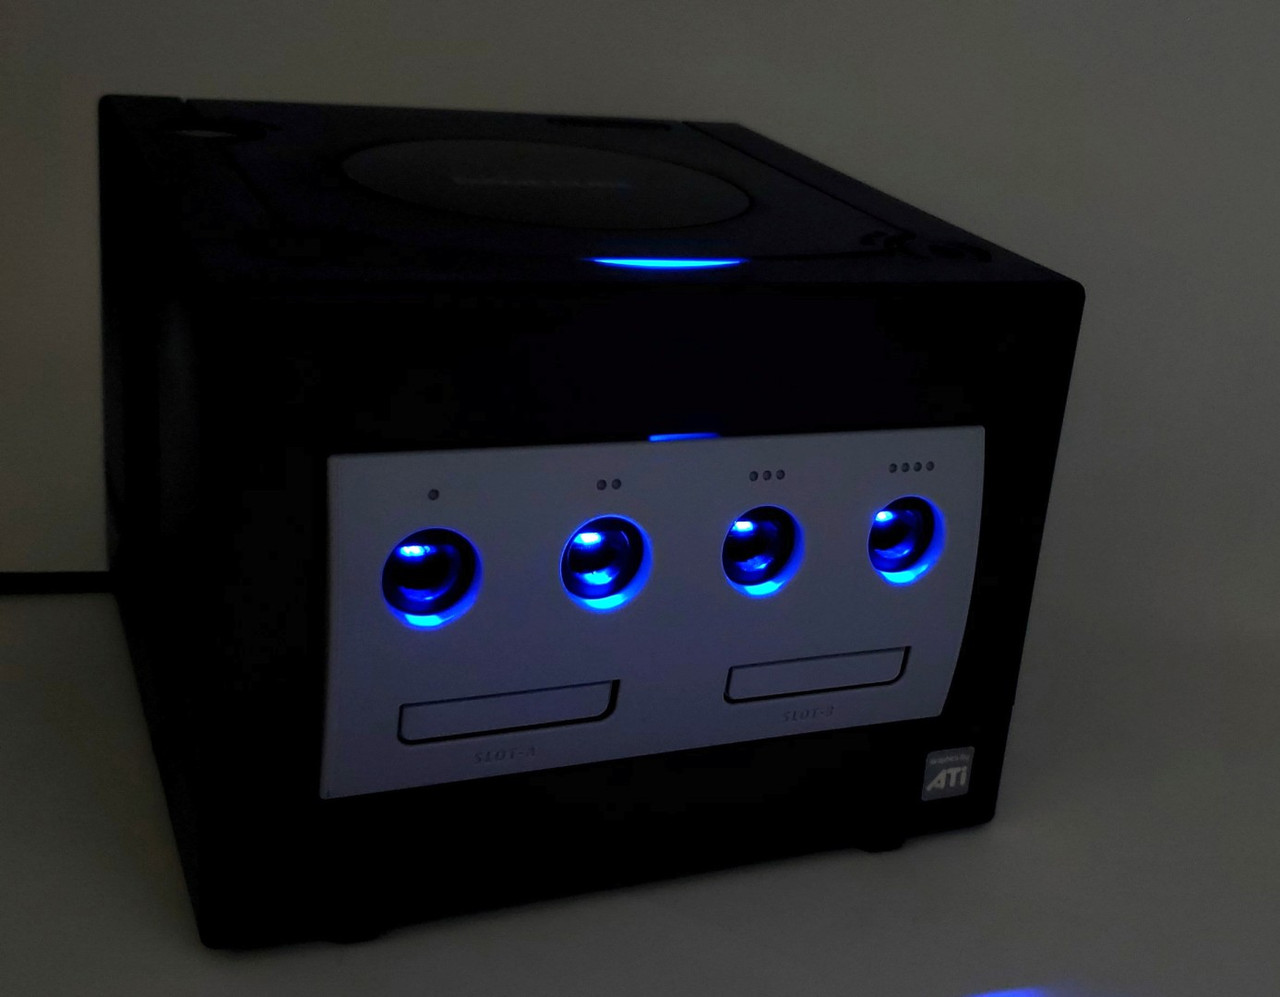 custom gamecube console